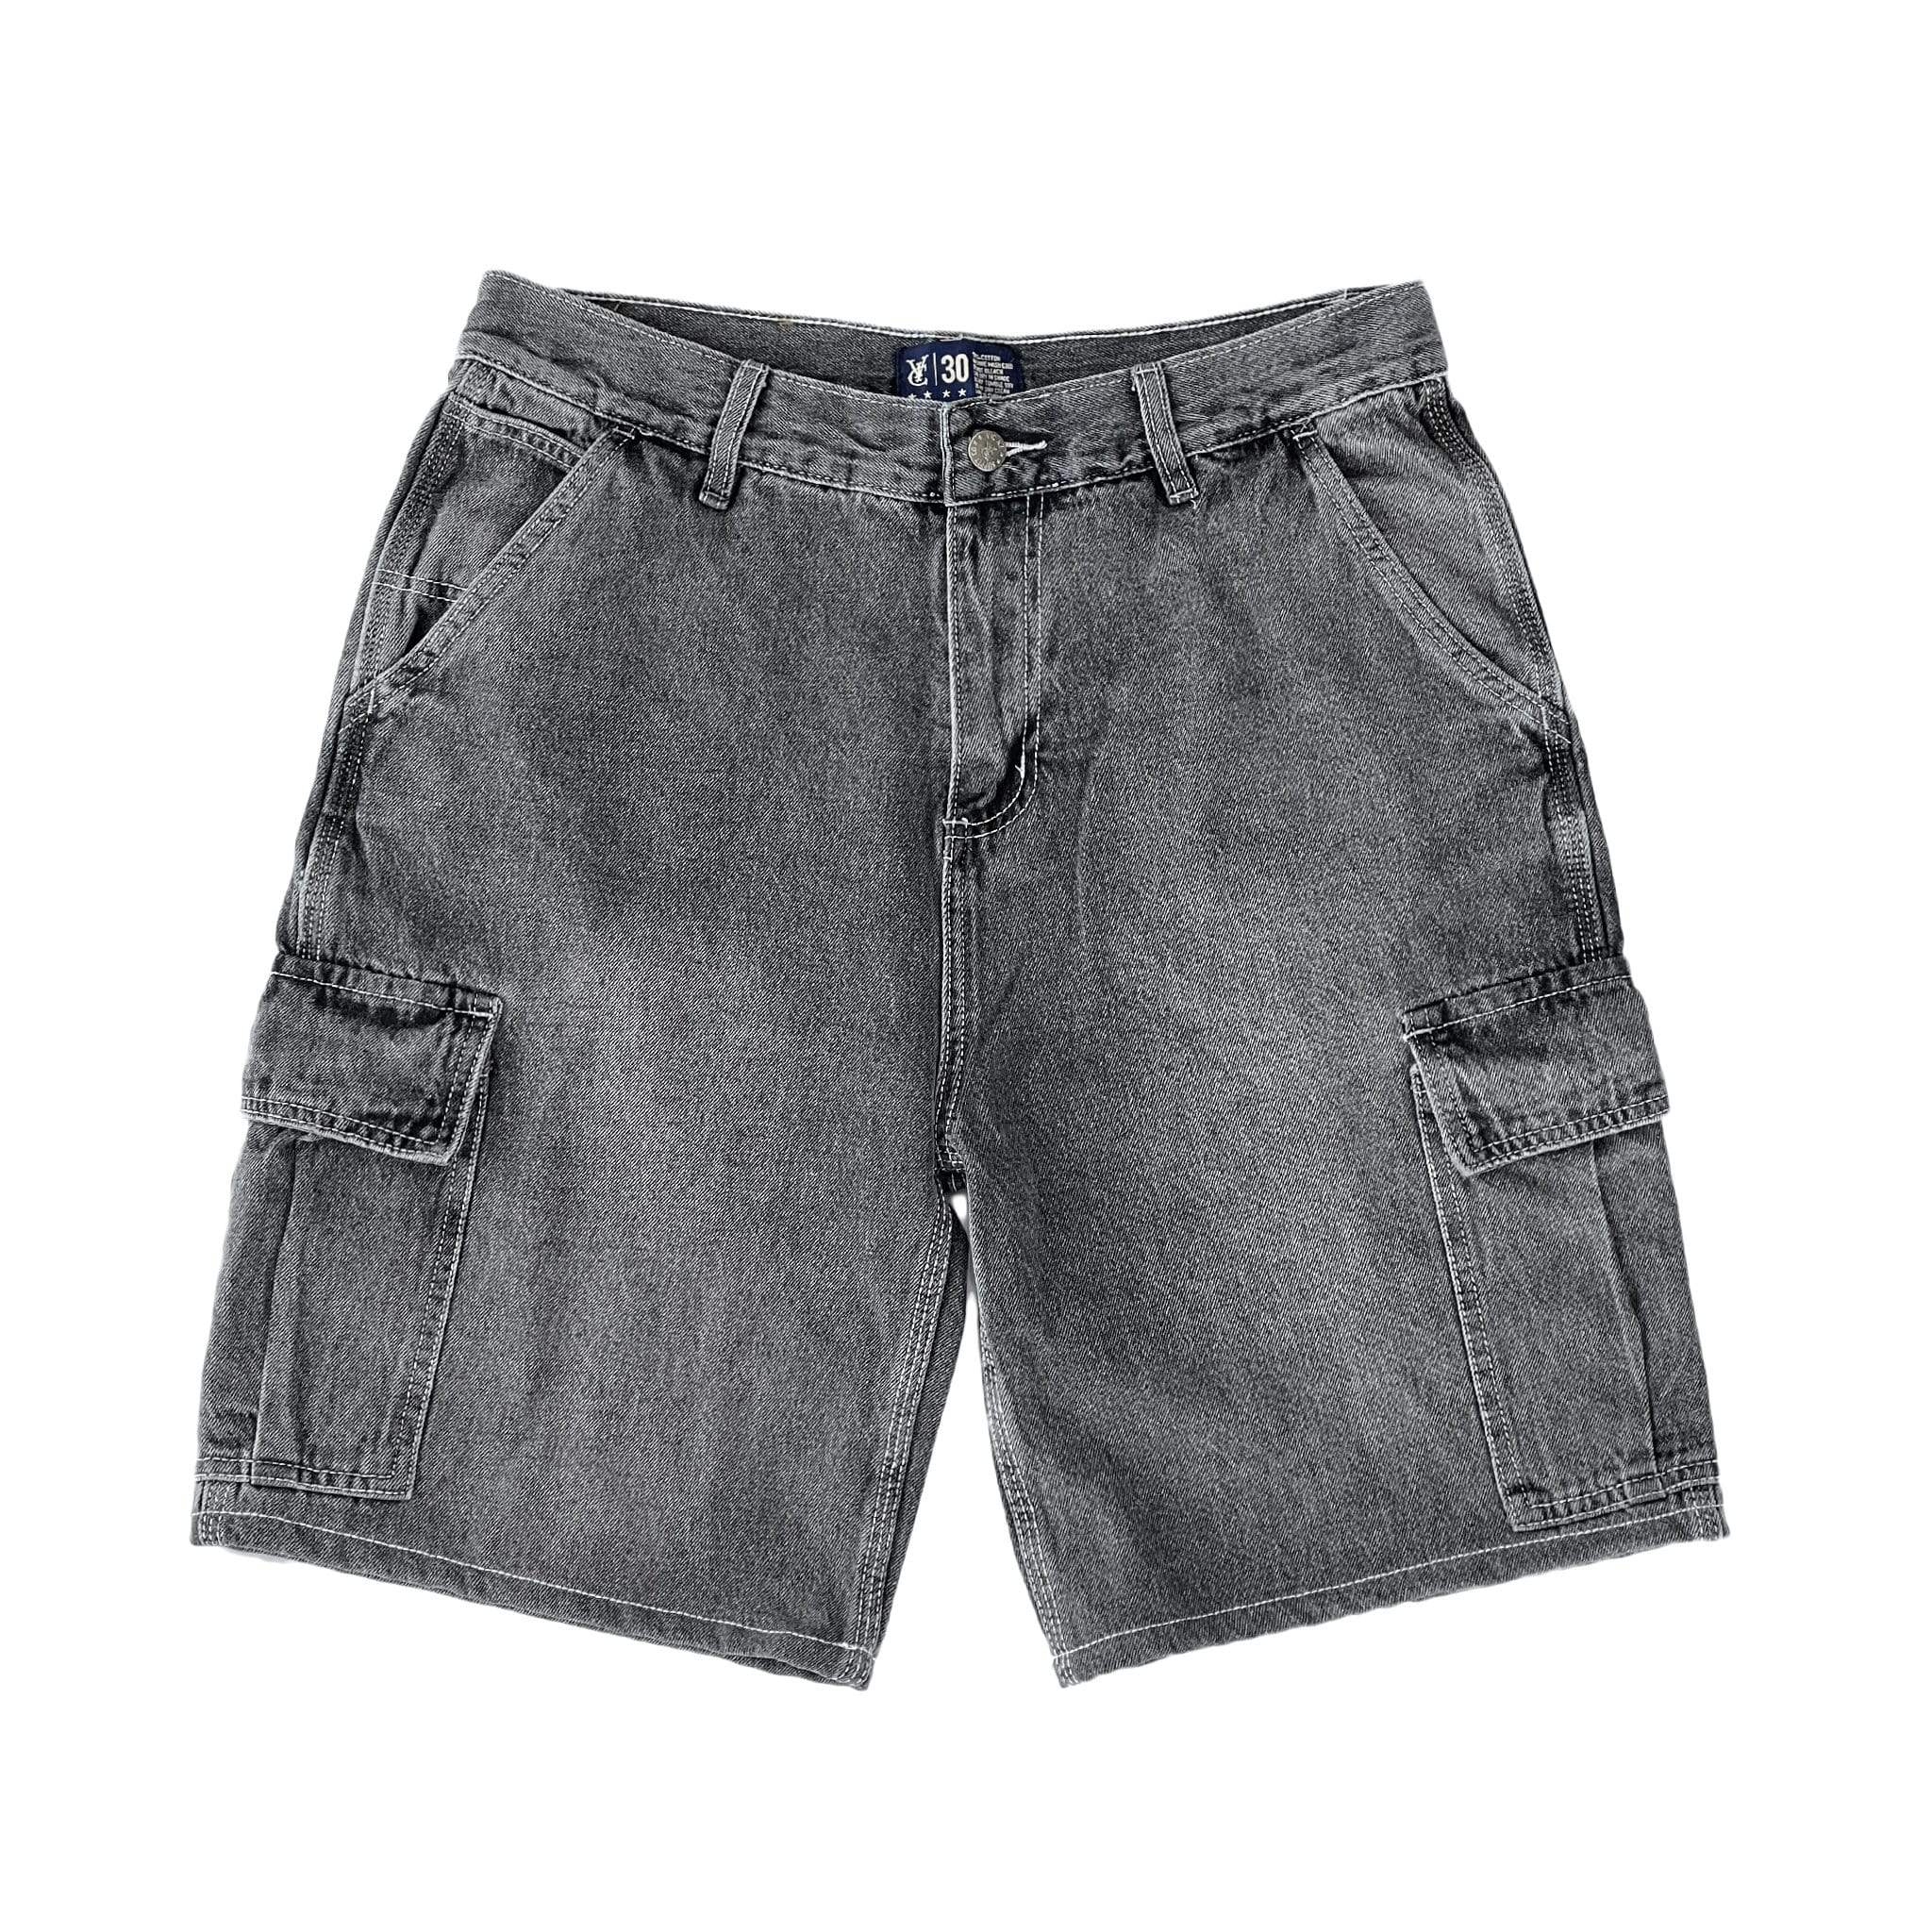 Cabelas 7 pocket hiker shorts Vintage cargo jean... - Depop